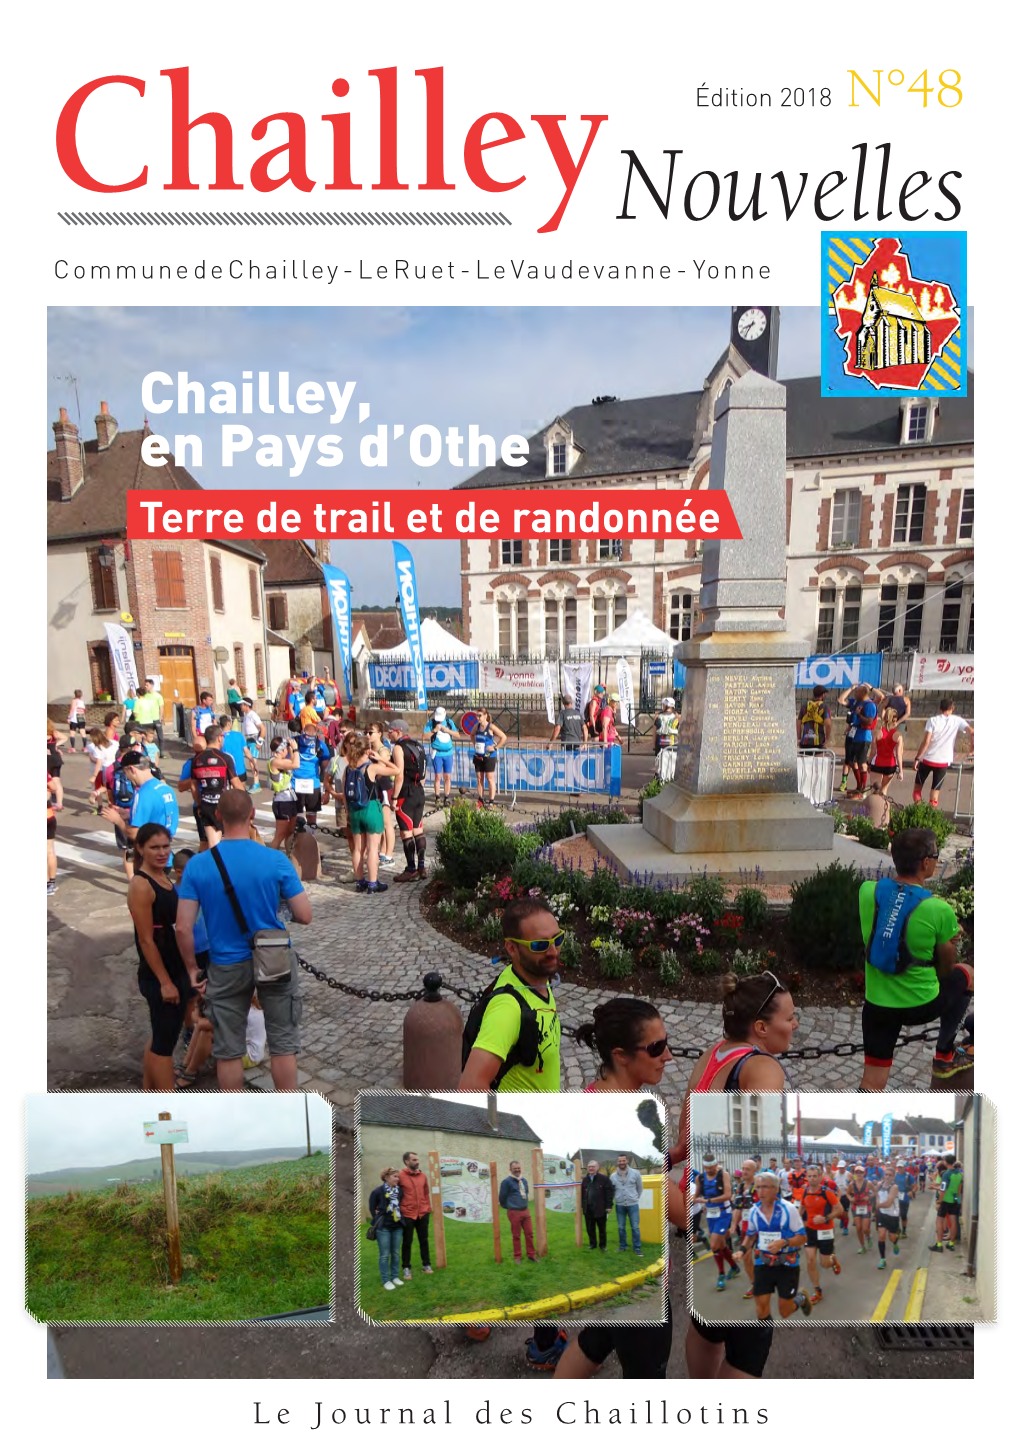 Chailleynouvelles Commune De Chailley - Le Ruet - Le Vaudevanne - Yonne